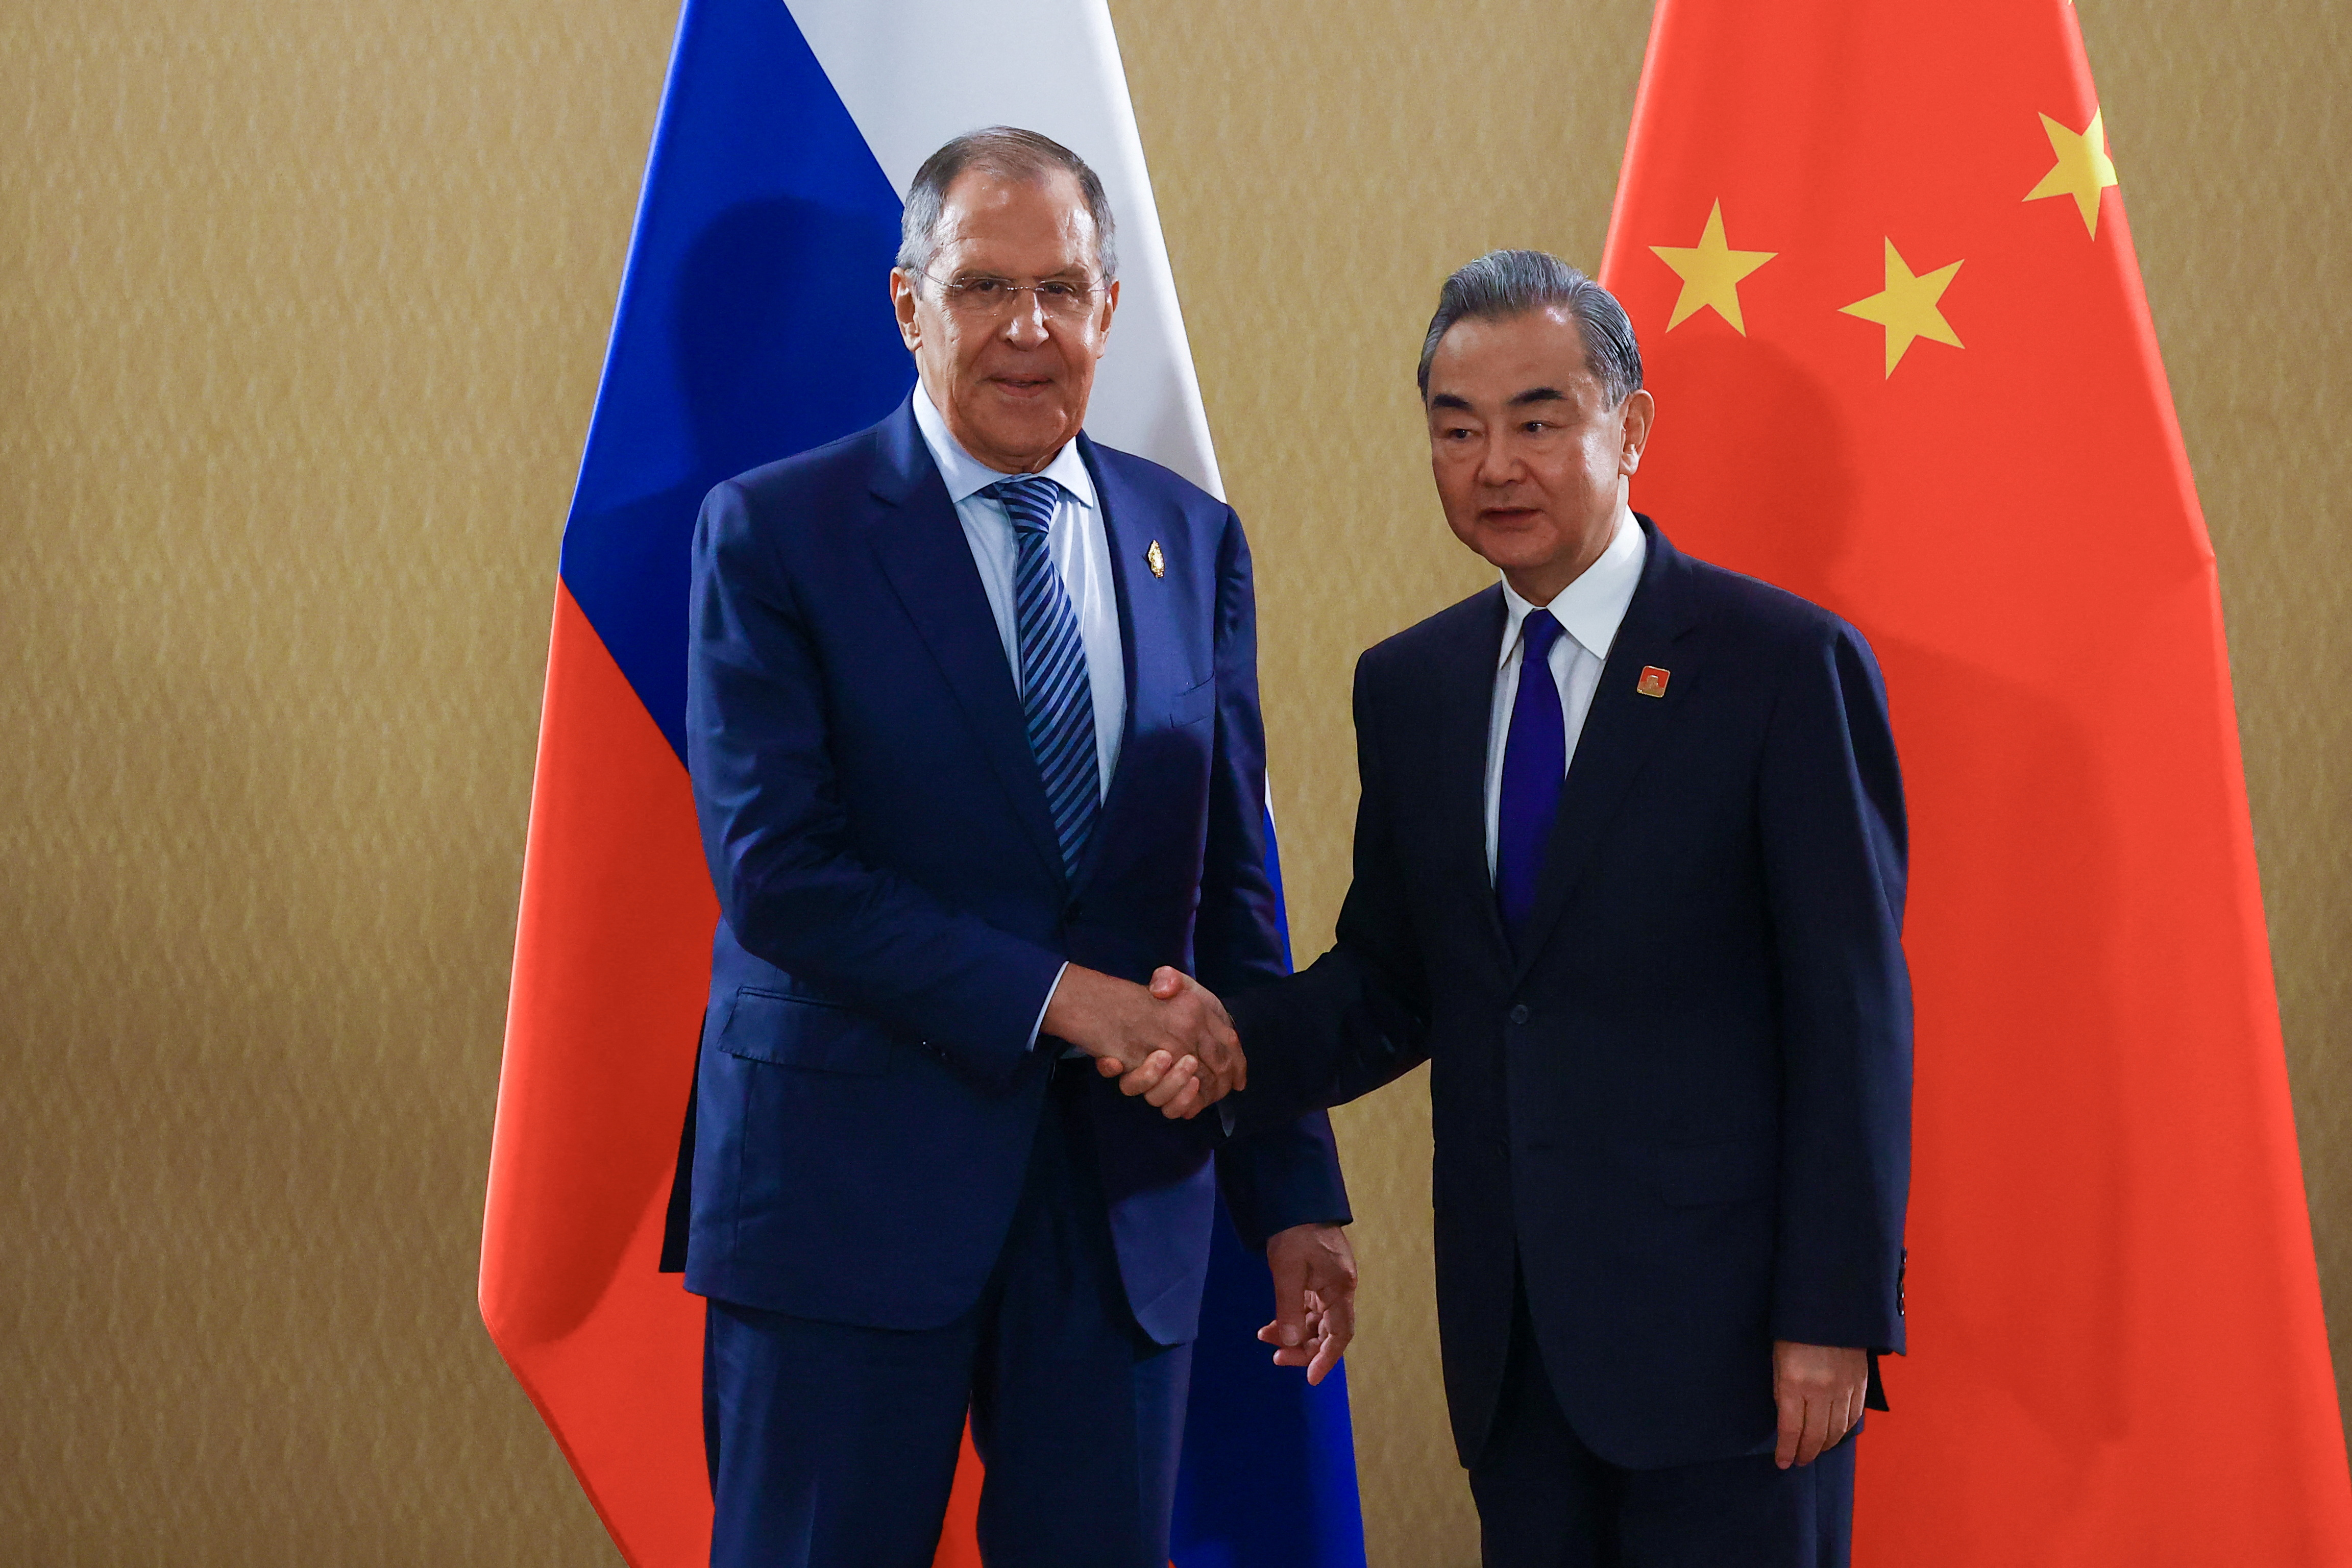 El ministro de Asuntos Exteriores de Rusia, Sergei Lavrov, y el ministro de Asuntos Exteriores de China, Wang Yi mantuvieron un encuentro durante la Cumbre del G20 en Bali, Indonesia (Reuters)